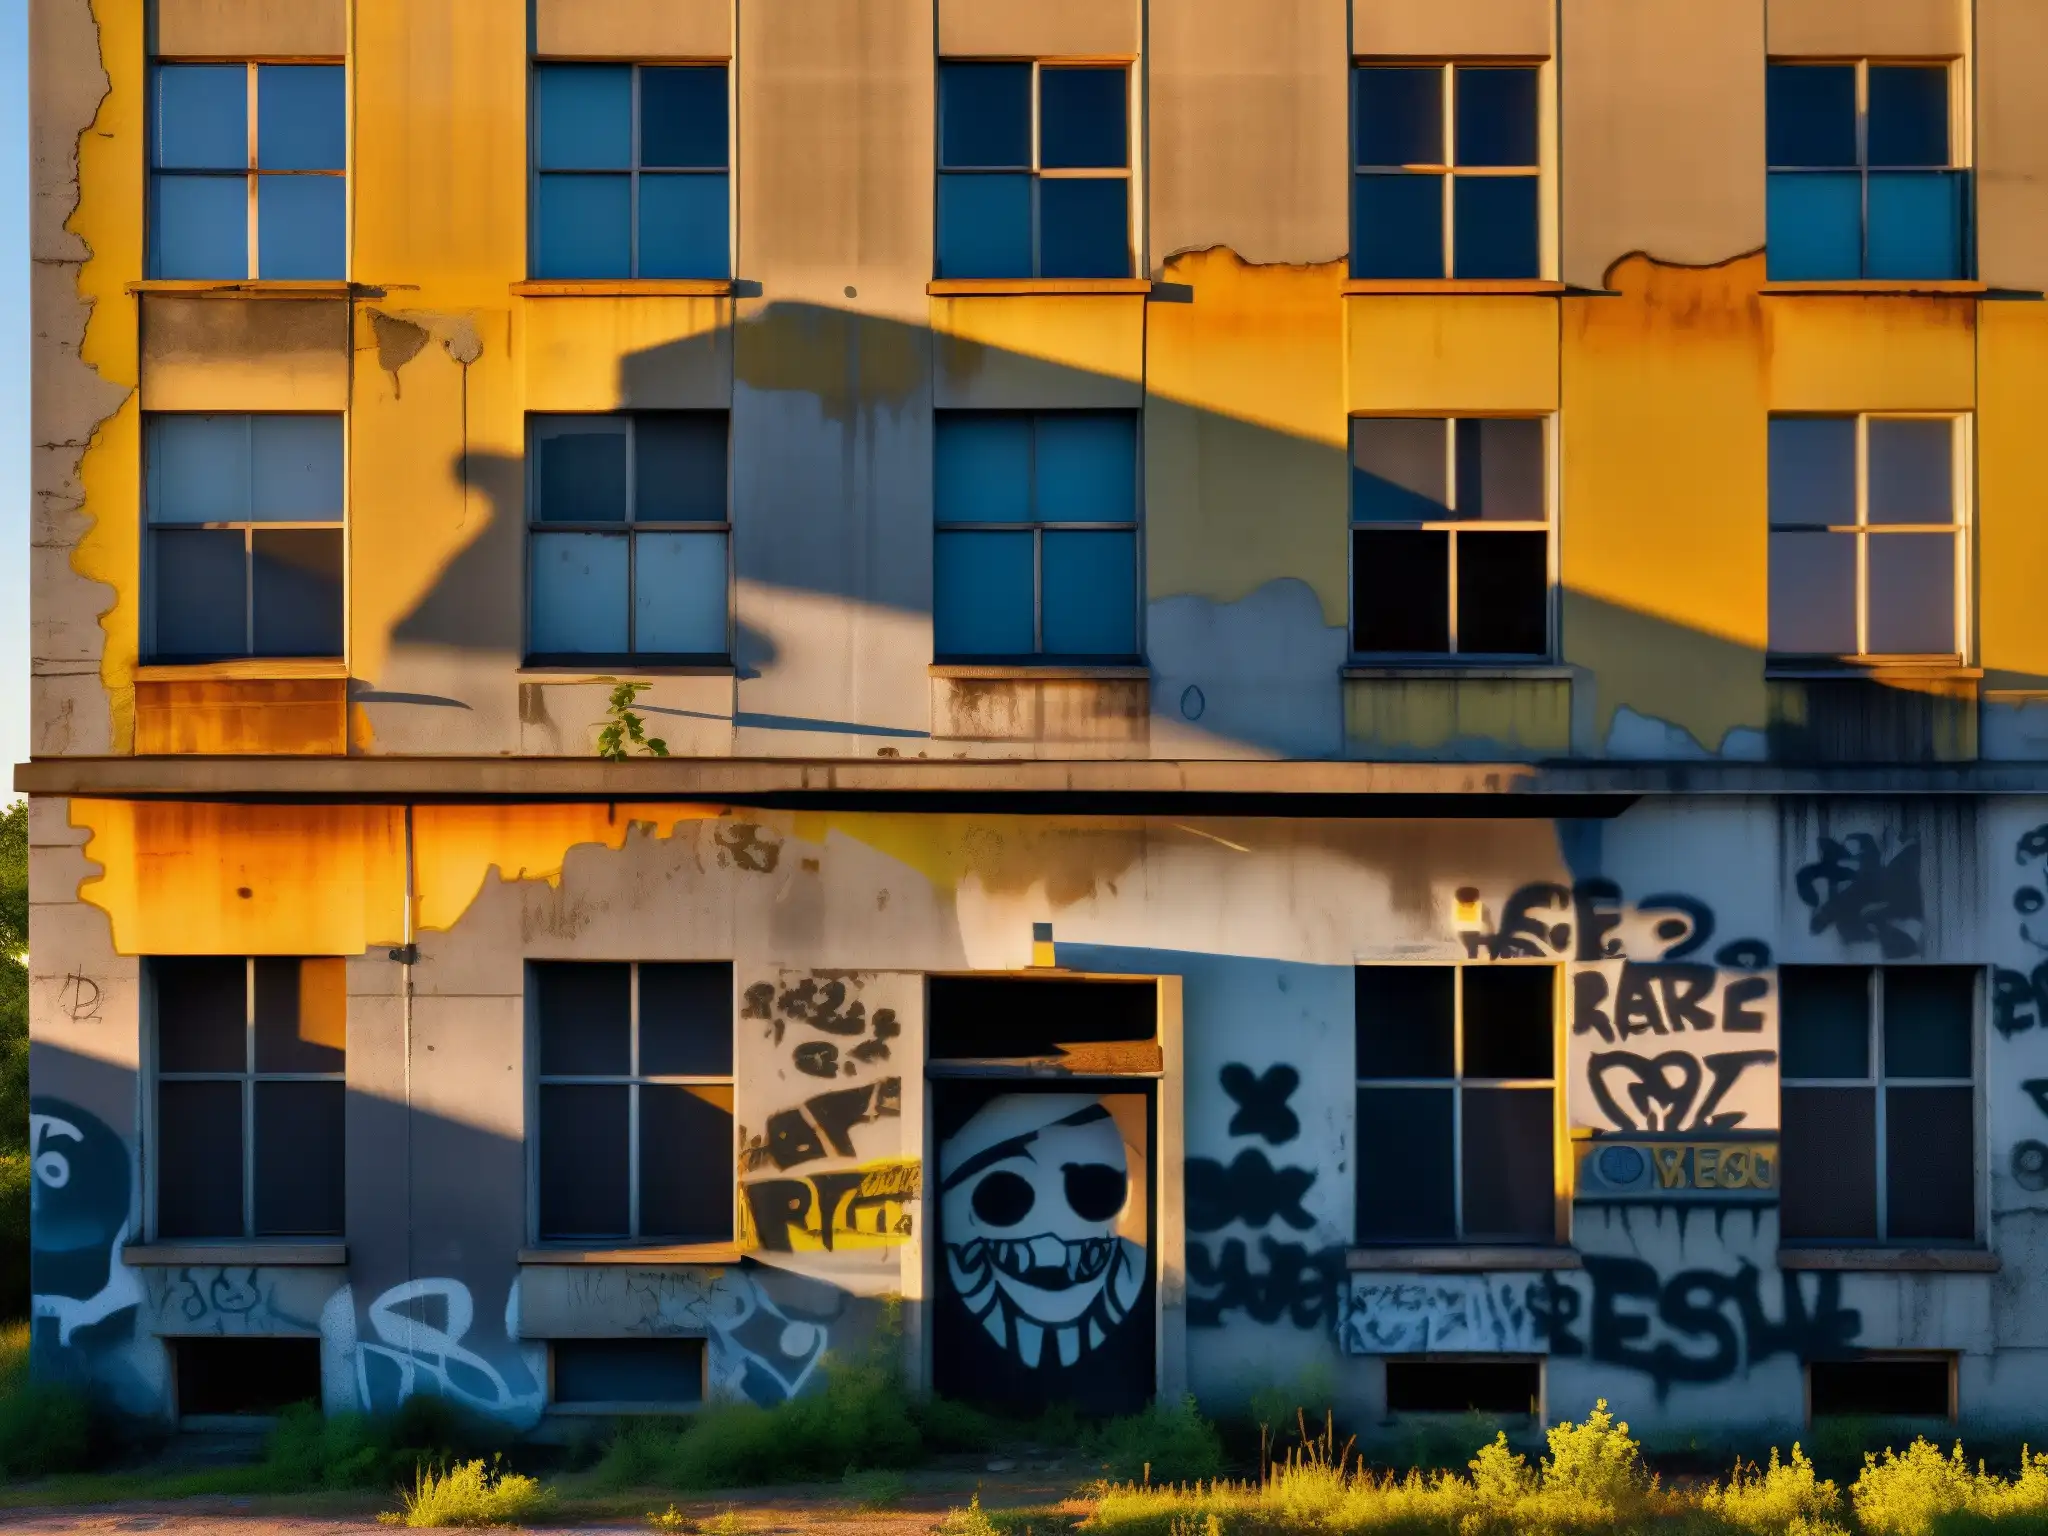 Un edificio abandonado y grafitiado al atardecer, reflejando leyendas urbanas y temores culturales